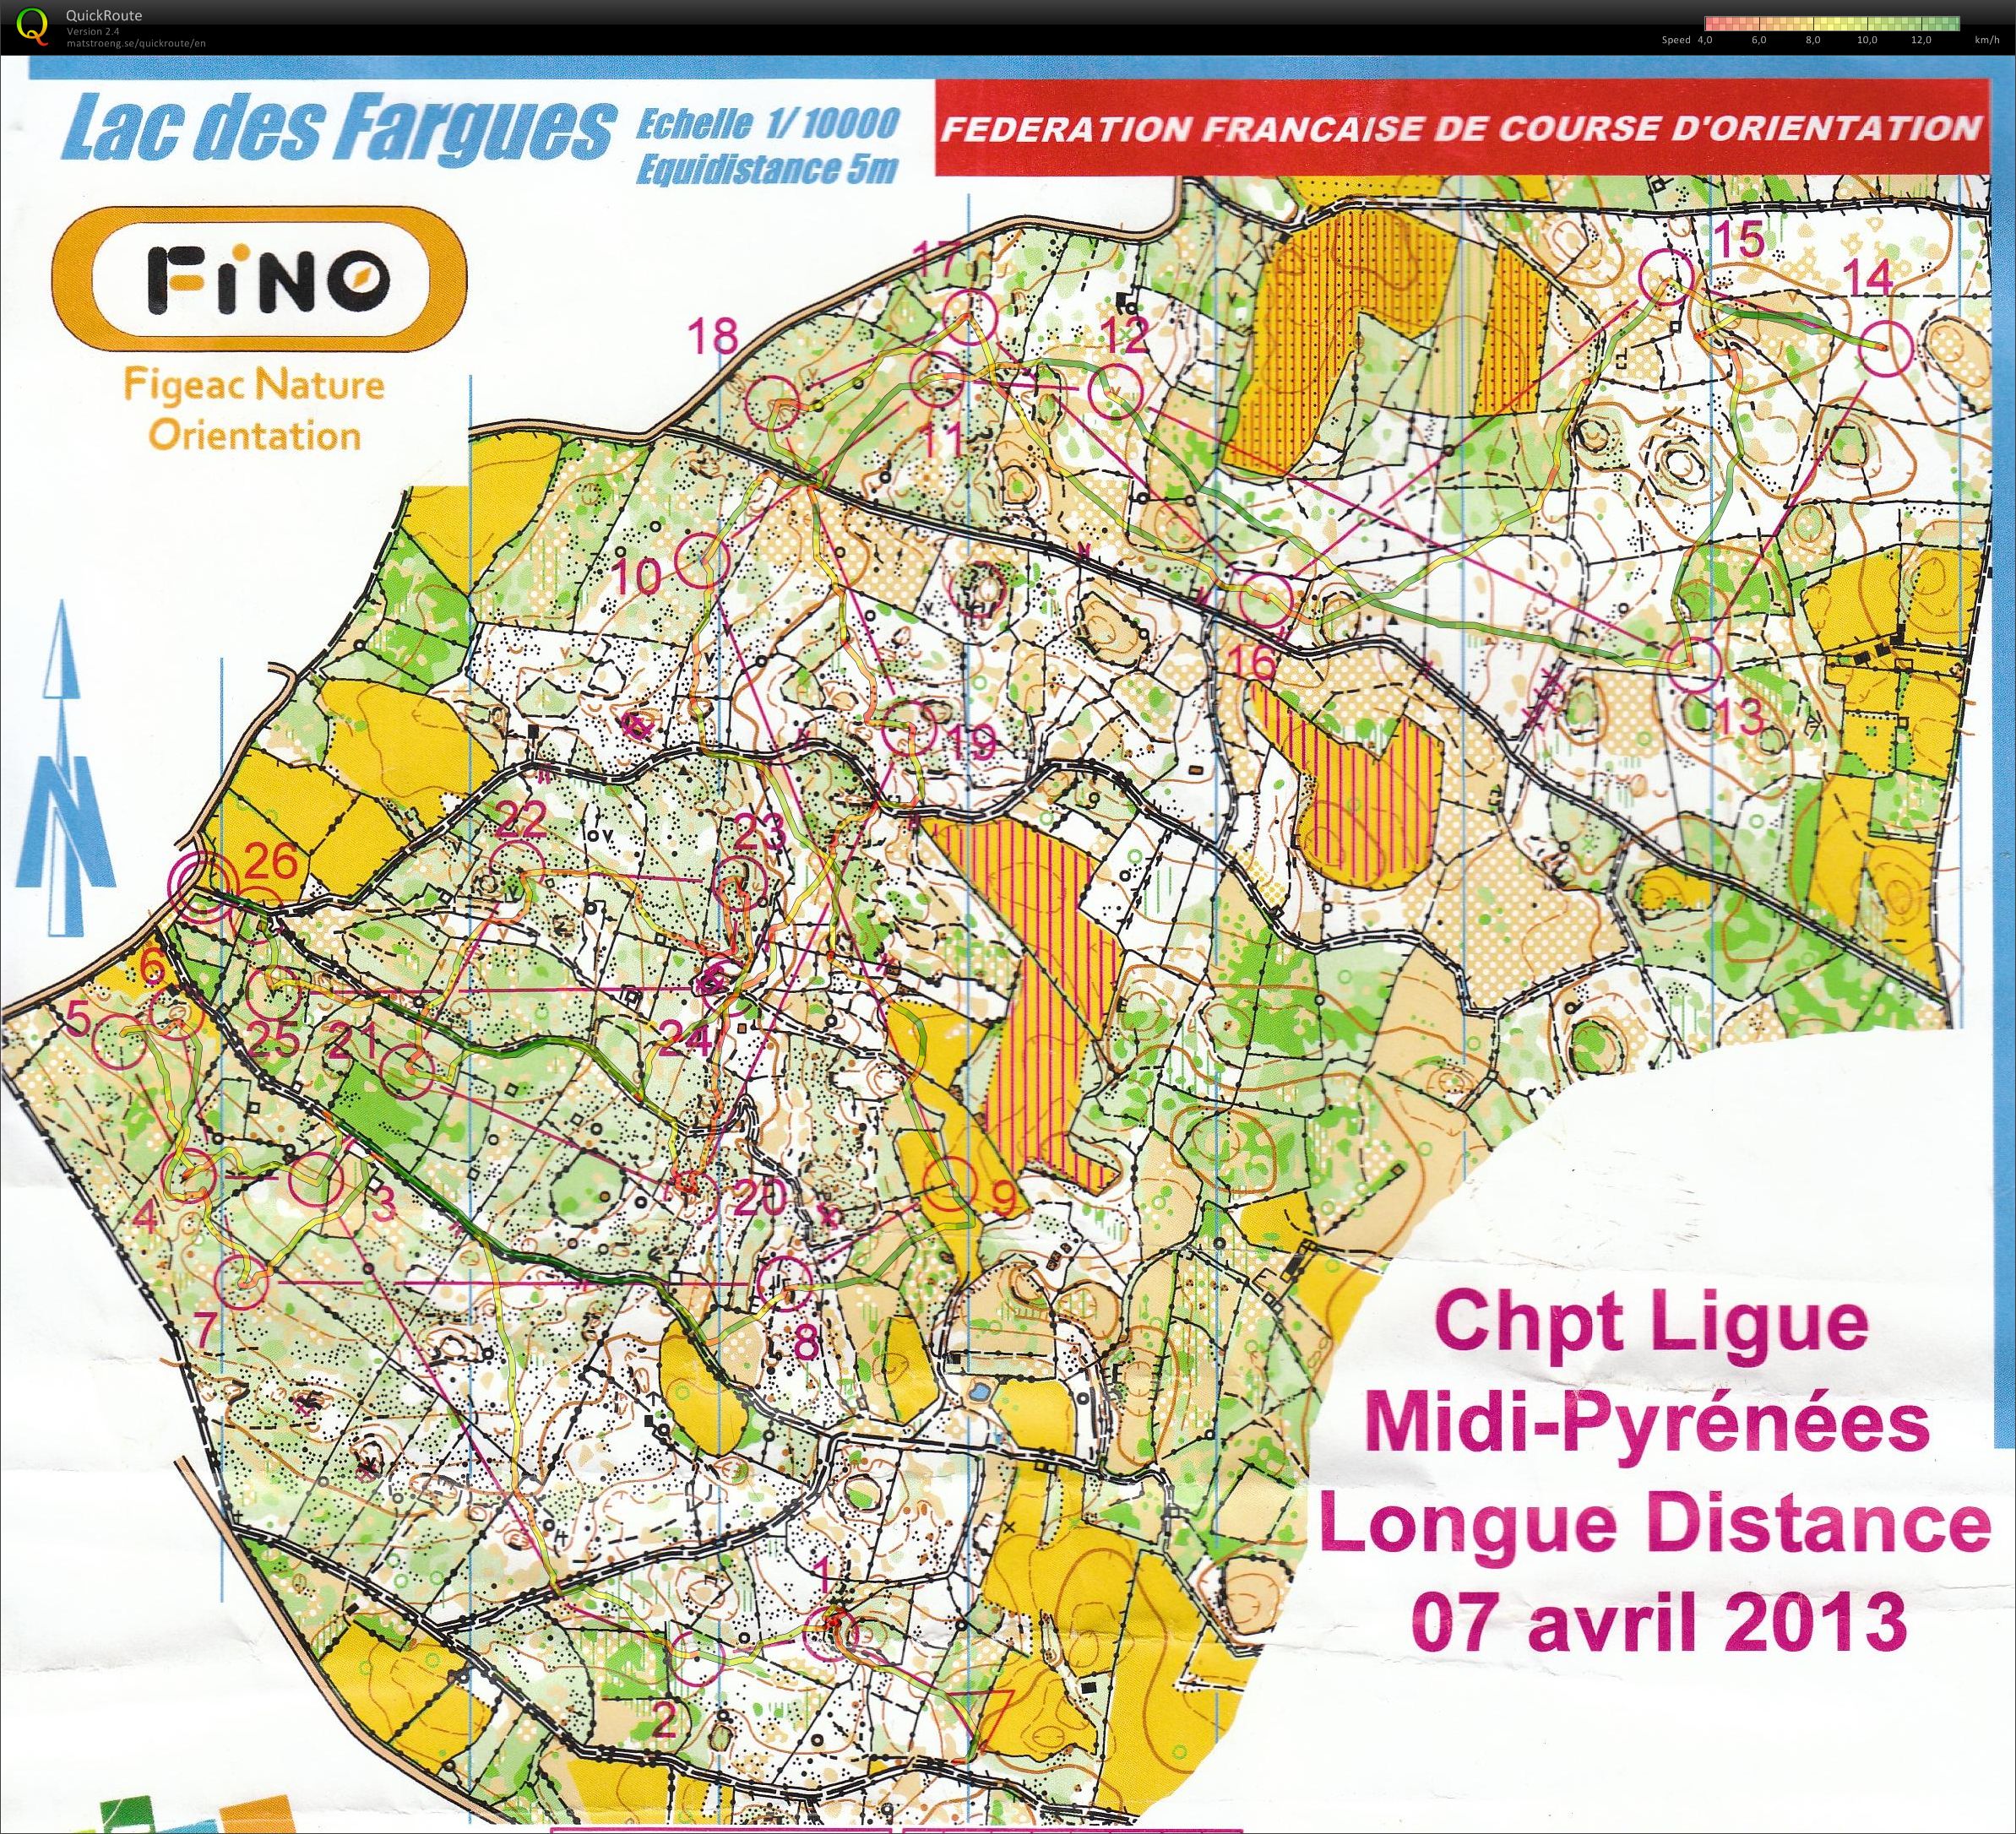 Championnat Régional LD Midi-Pyrénées (2013-04-07)